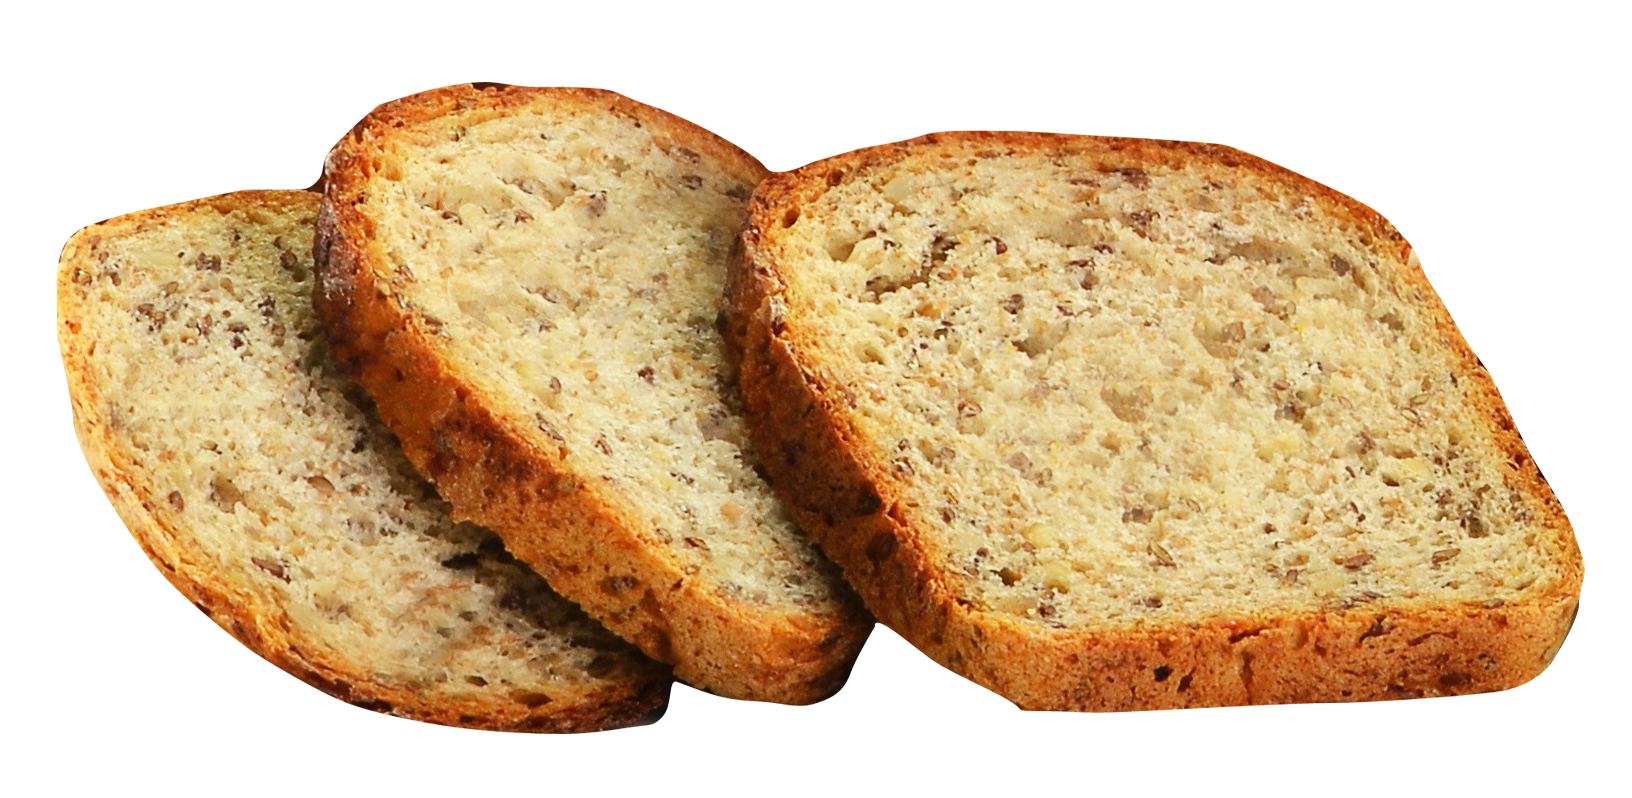 Multi Slices Grain Bread Free Photo PNG Image